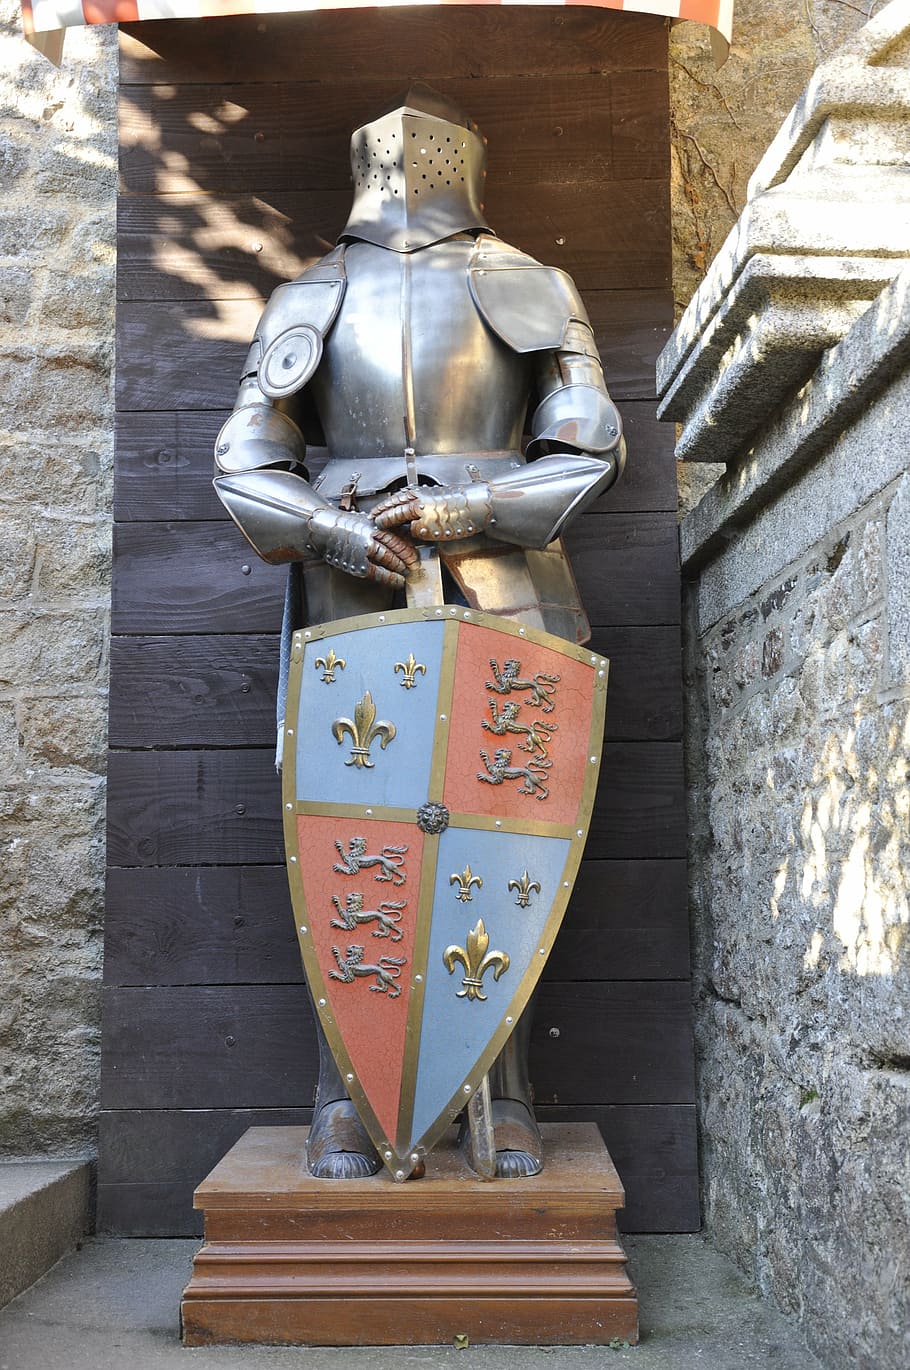 armadura de prata prato cheio, armadura, história, brasão de armas, mont saint michel, frança, castelo, igreja, monumento, ponte